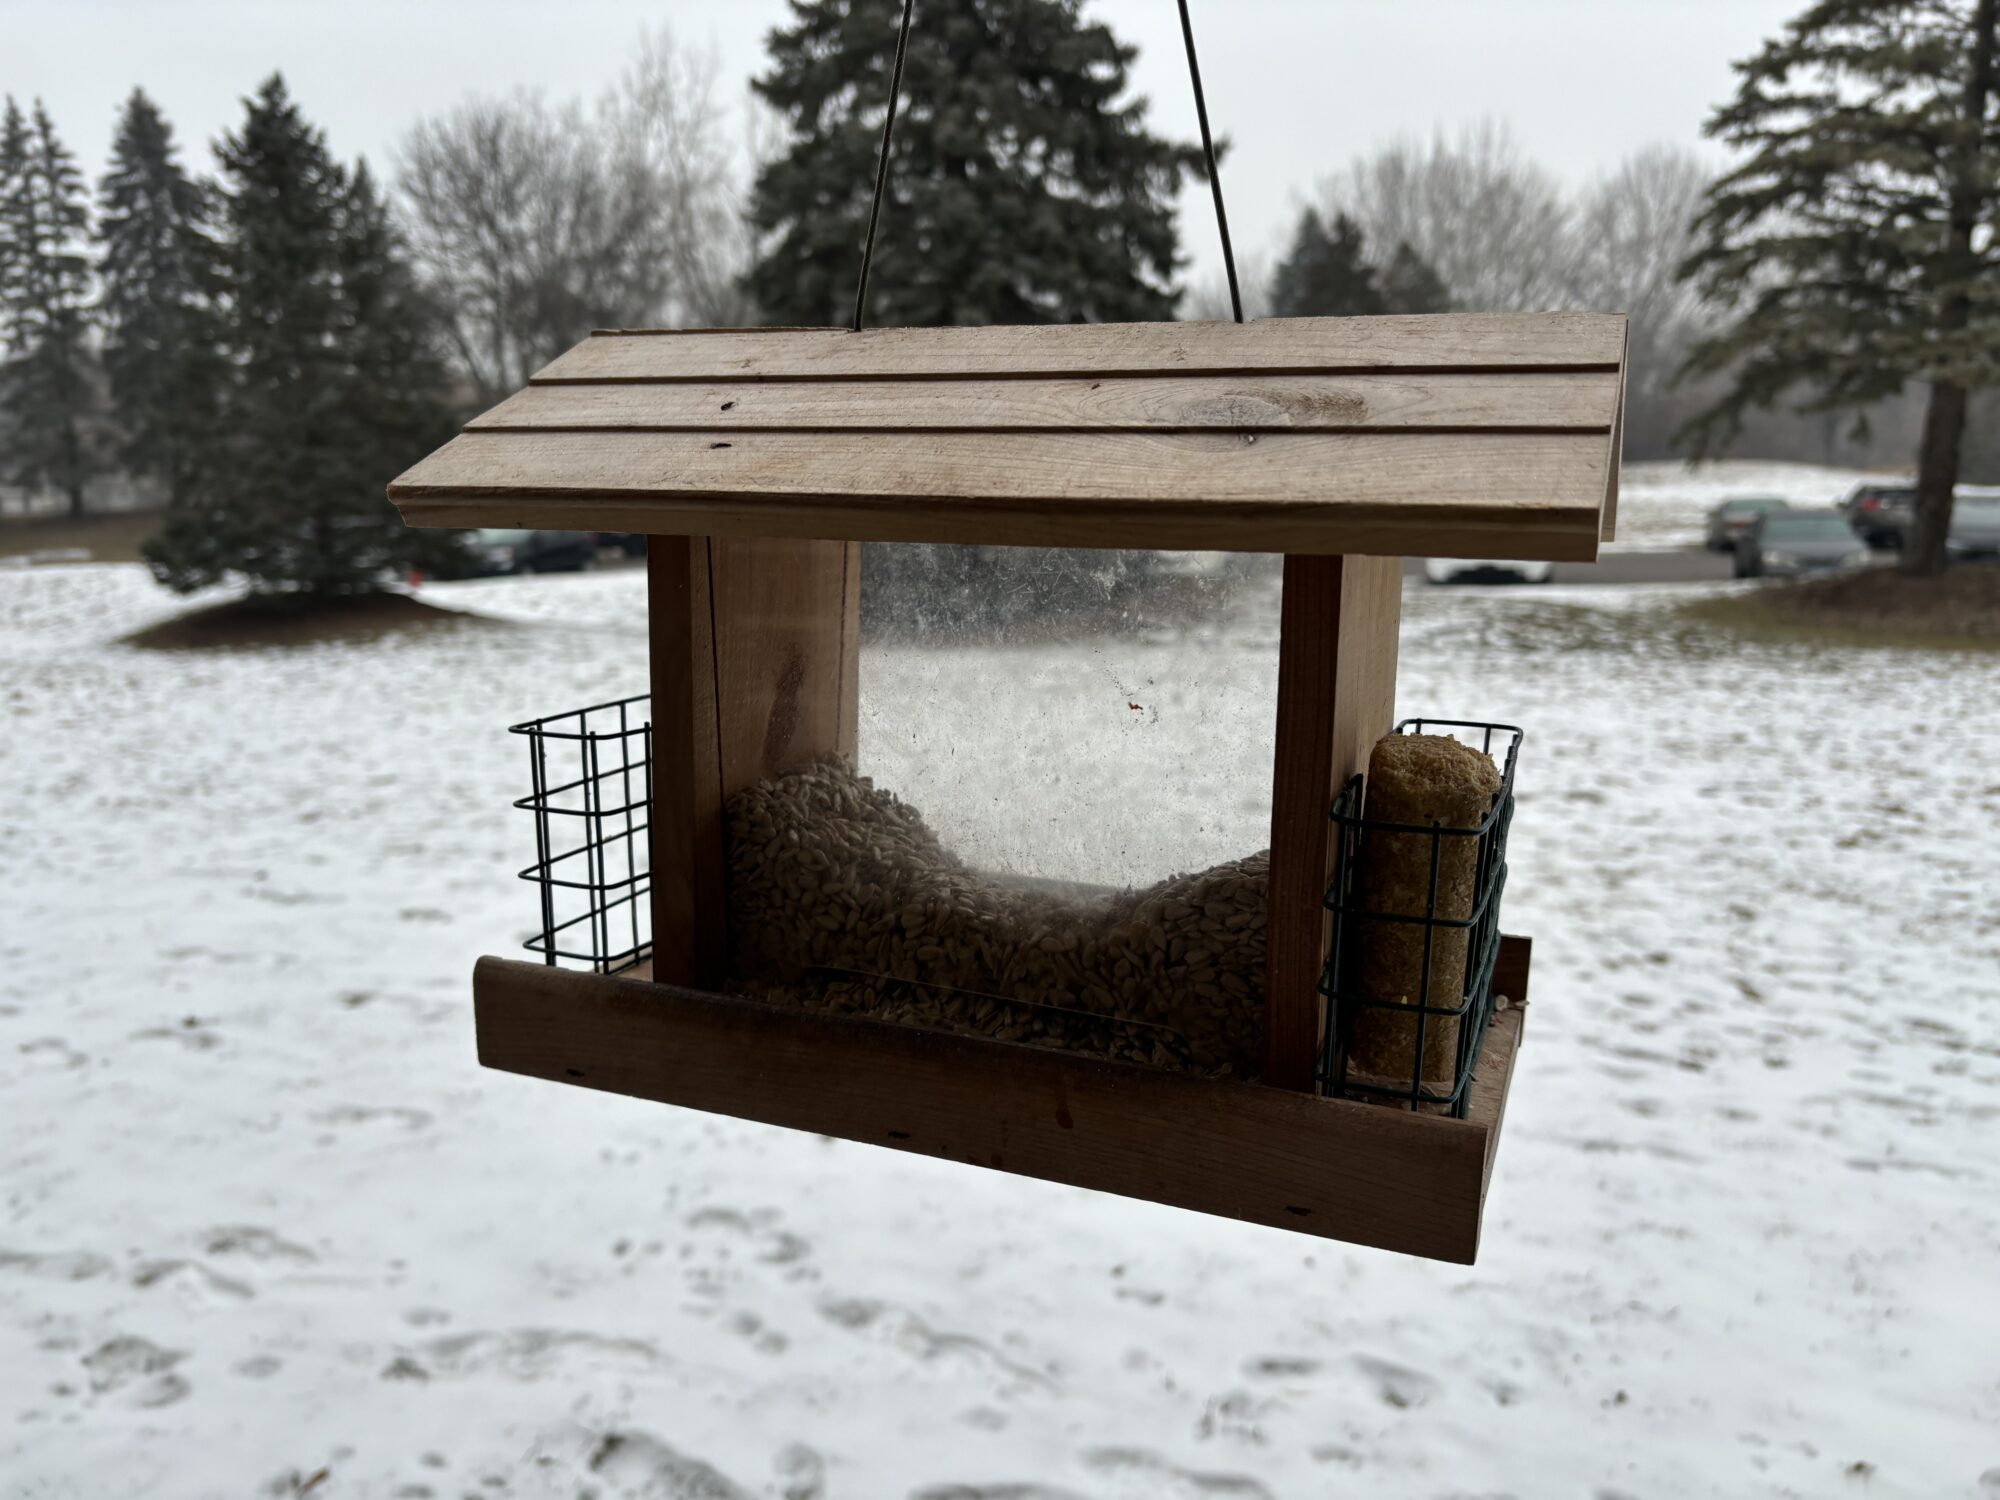 A hopper bird feeder with space for suet cakes.